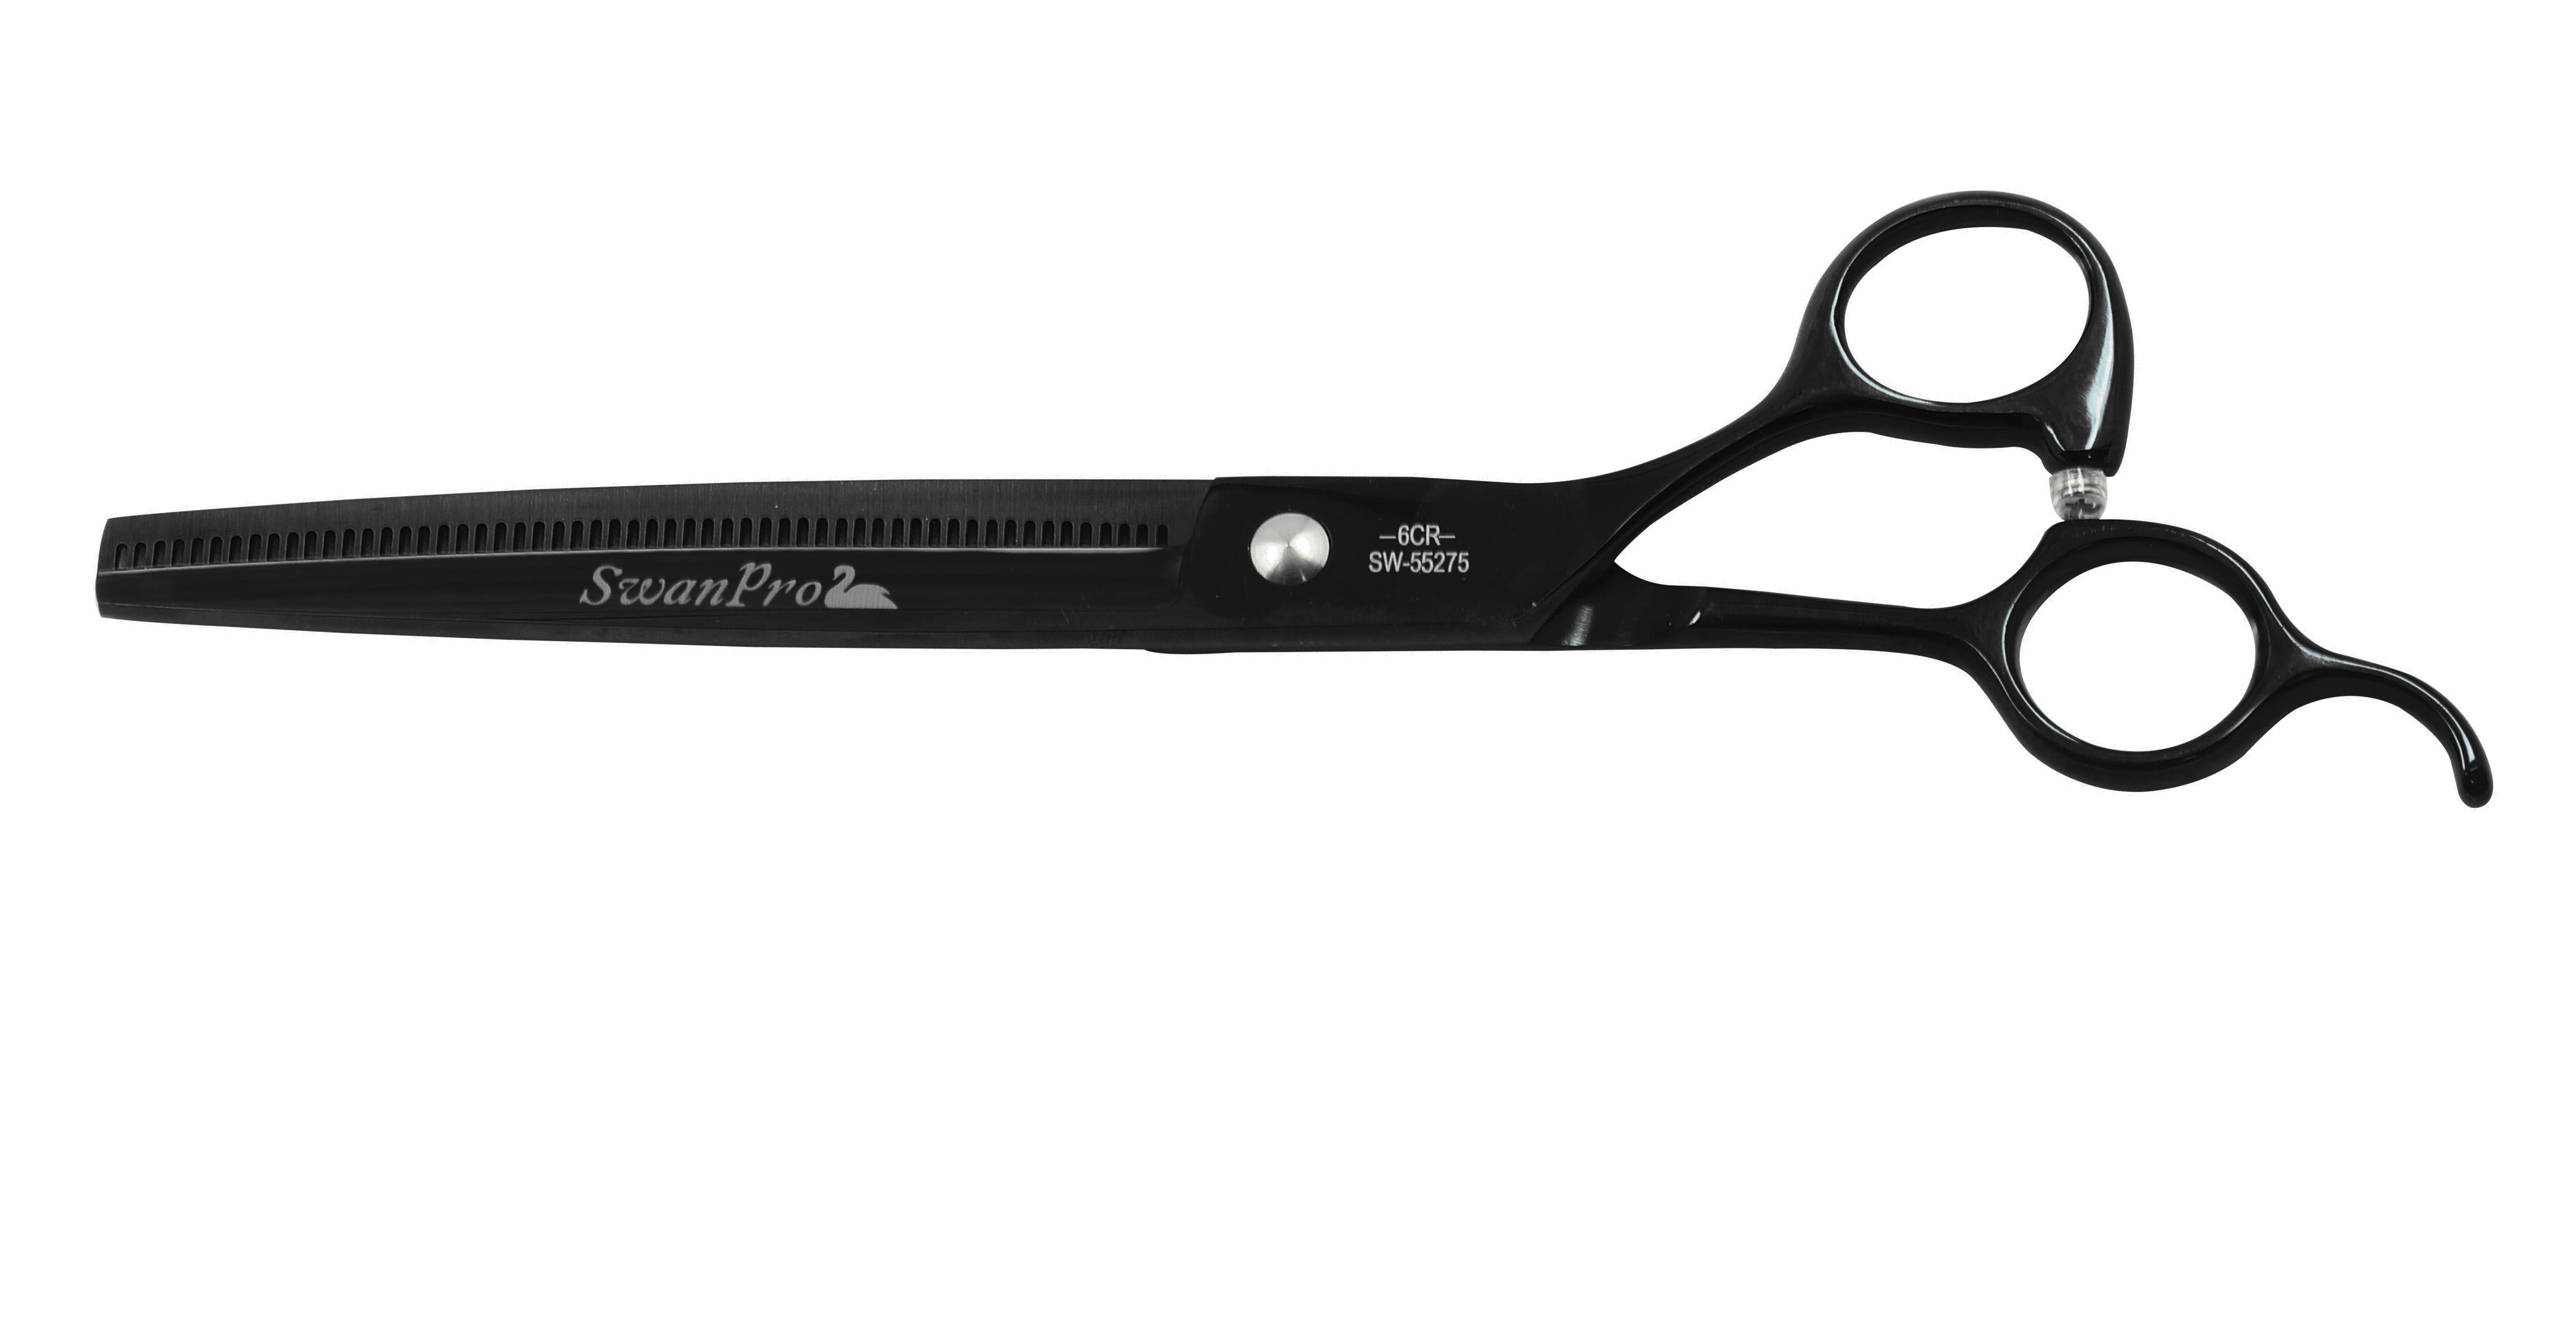 SWAN Thinner Scissors, 7.5 Black